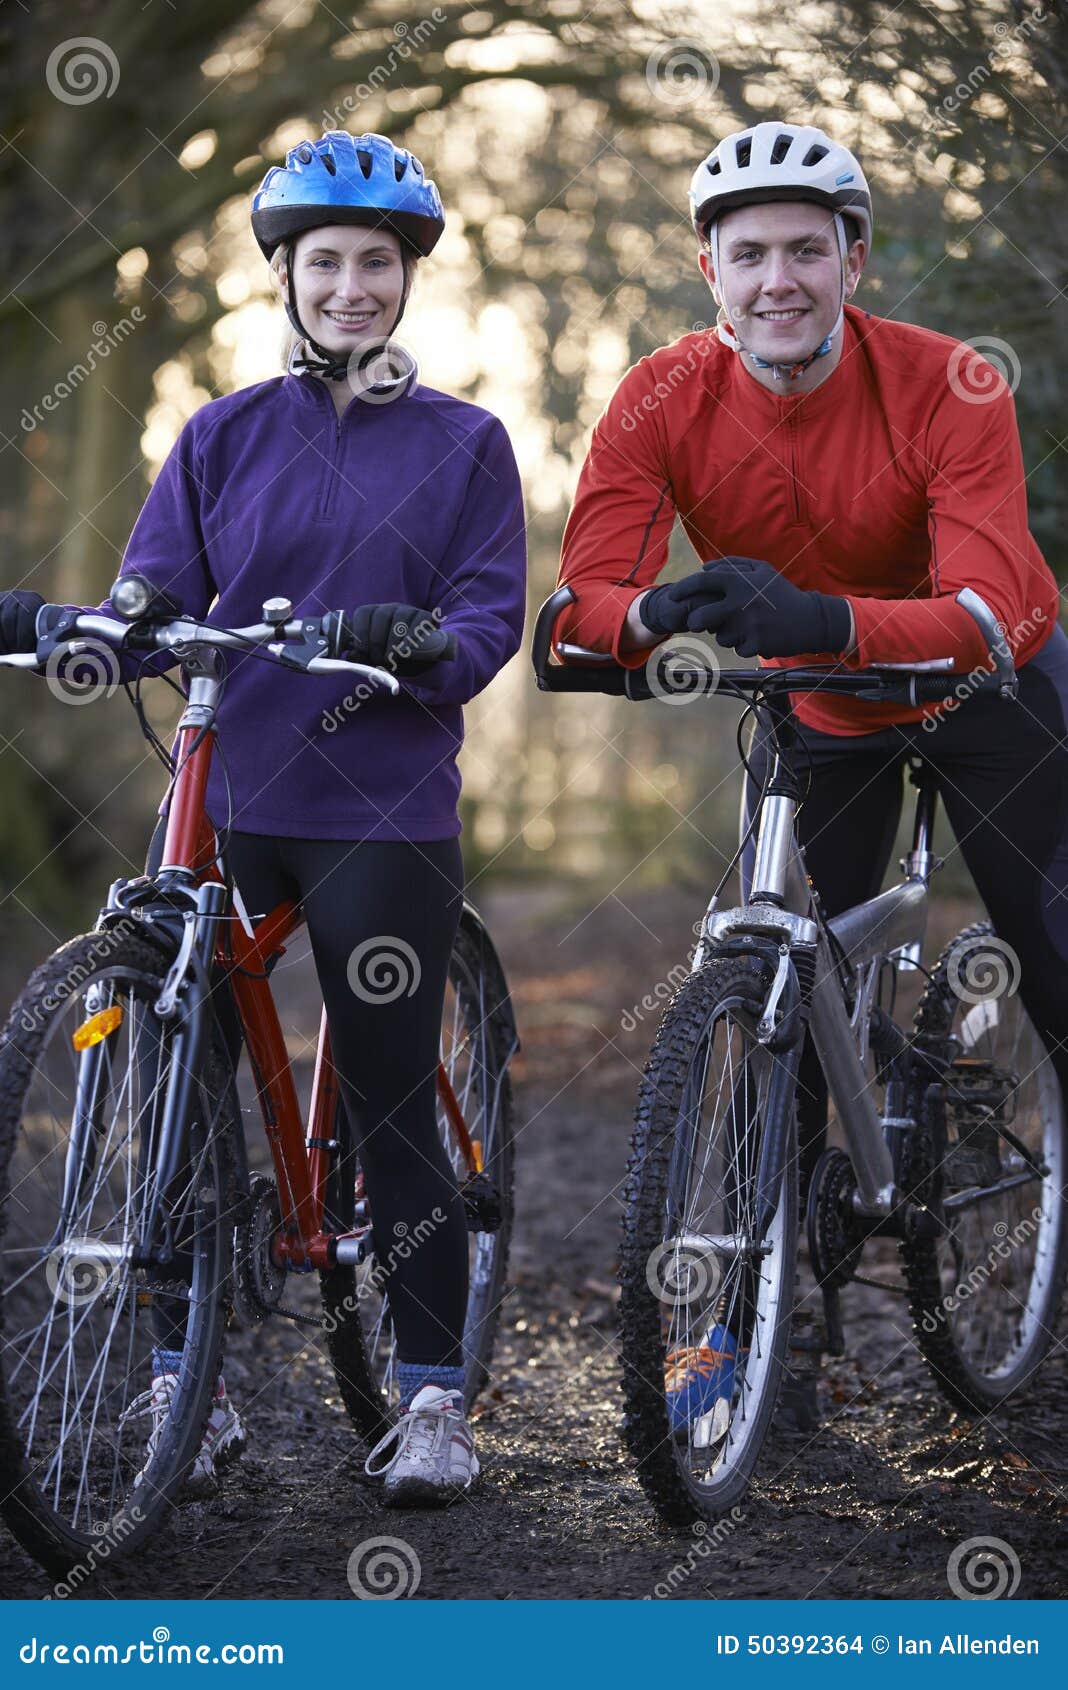 couple riding mountain bikes through woodlands